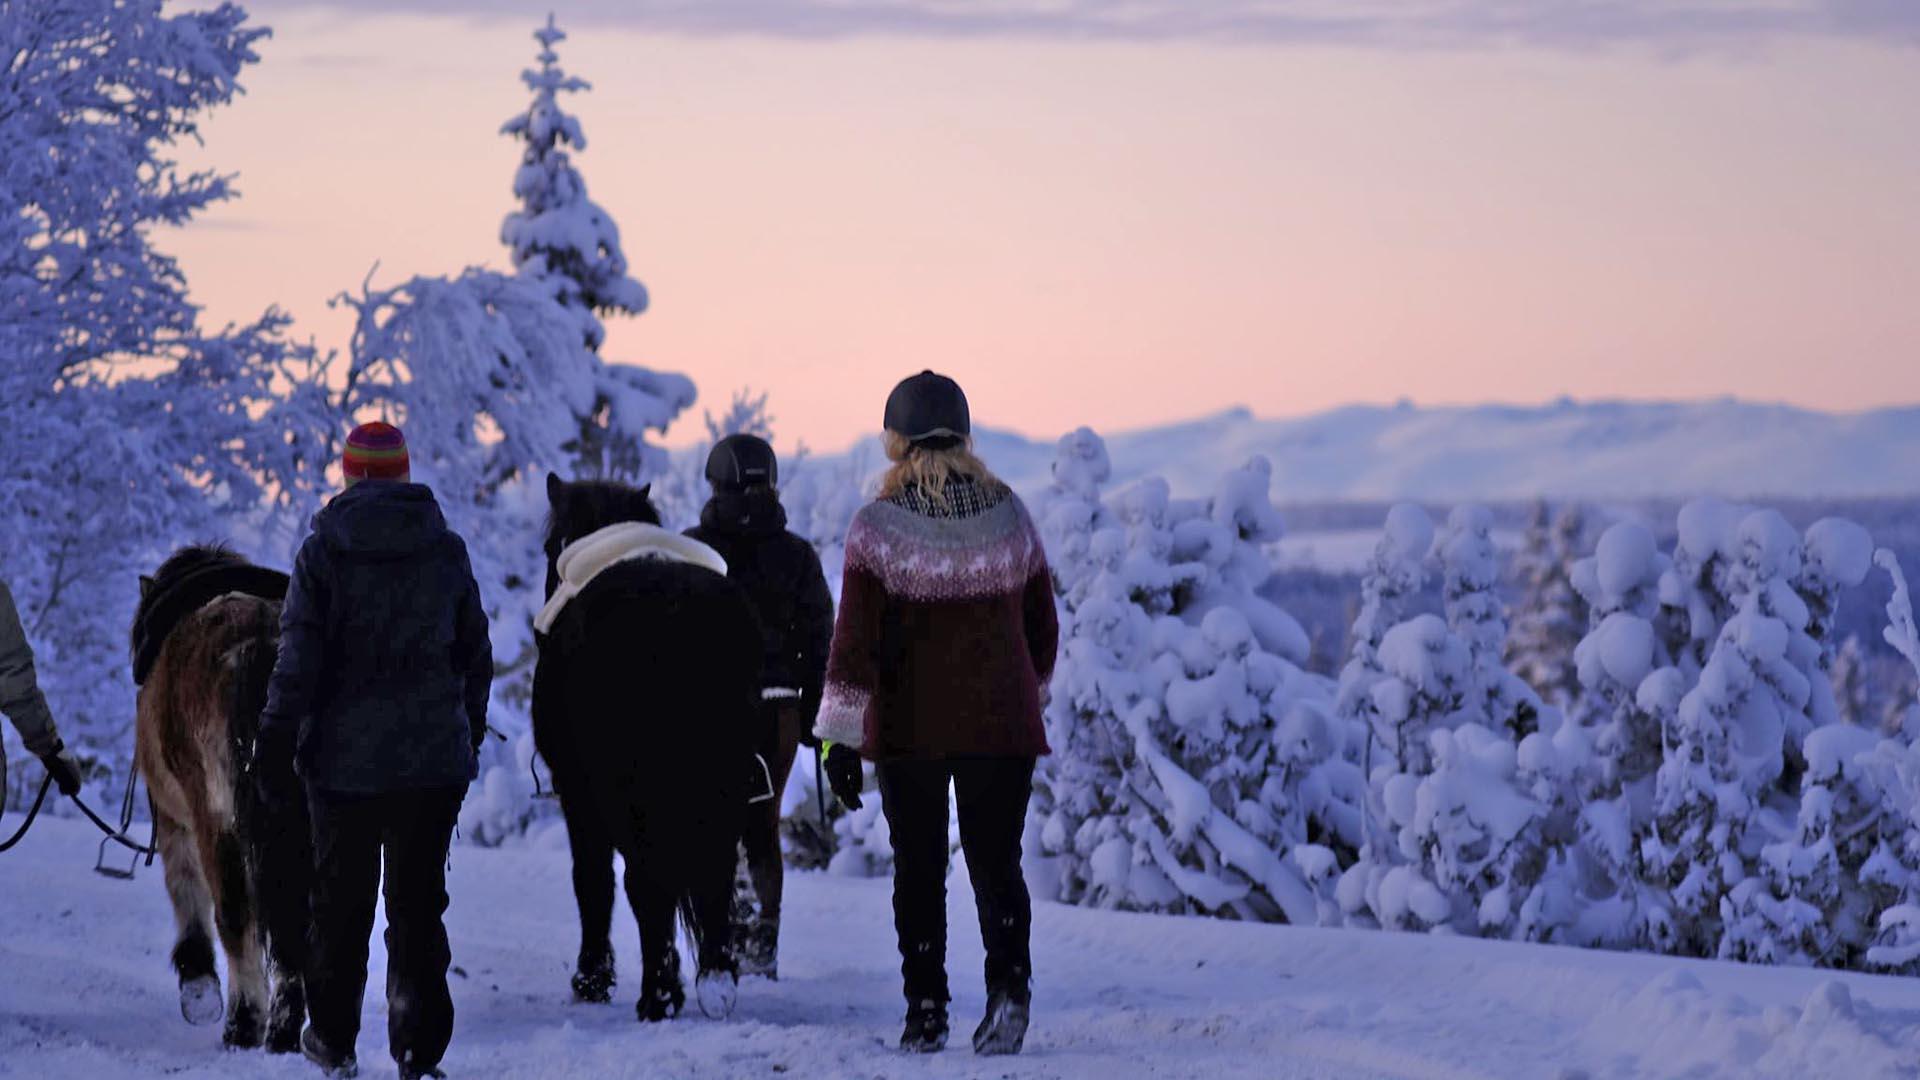 Eine Gruppe Reiter führt die Pferde am Halfter auf einer verschneiten Straße mit schneebedeckten Fichten im weichen Abendlicht nach Sonnenuntergang